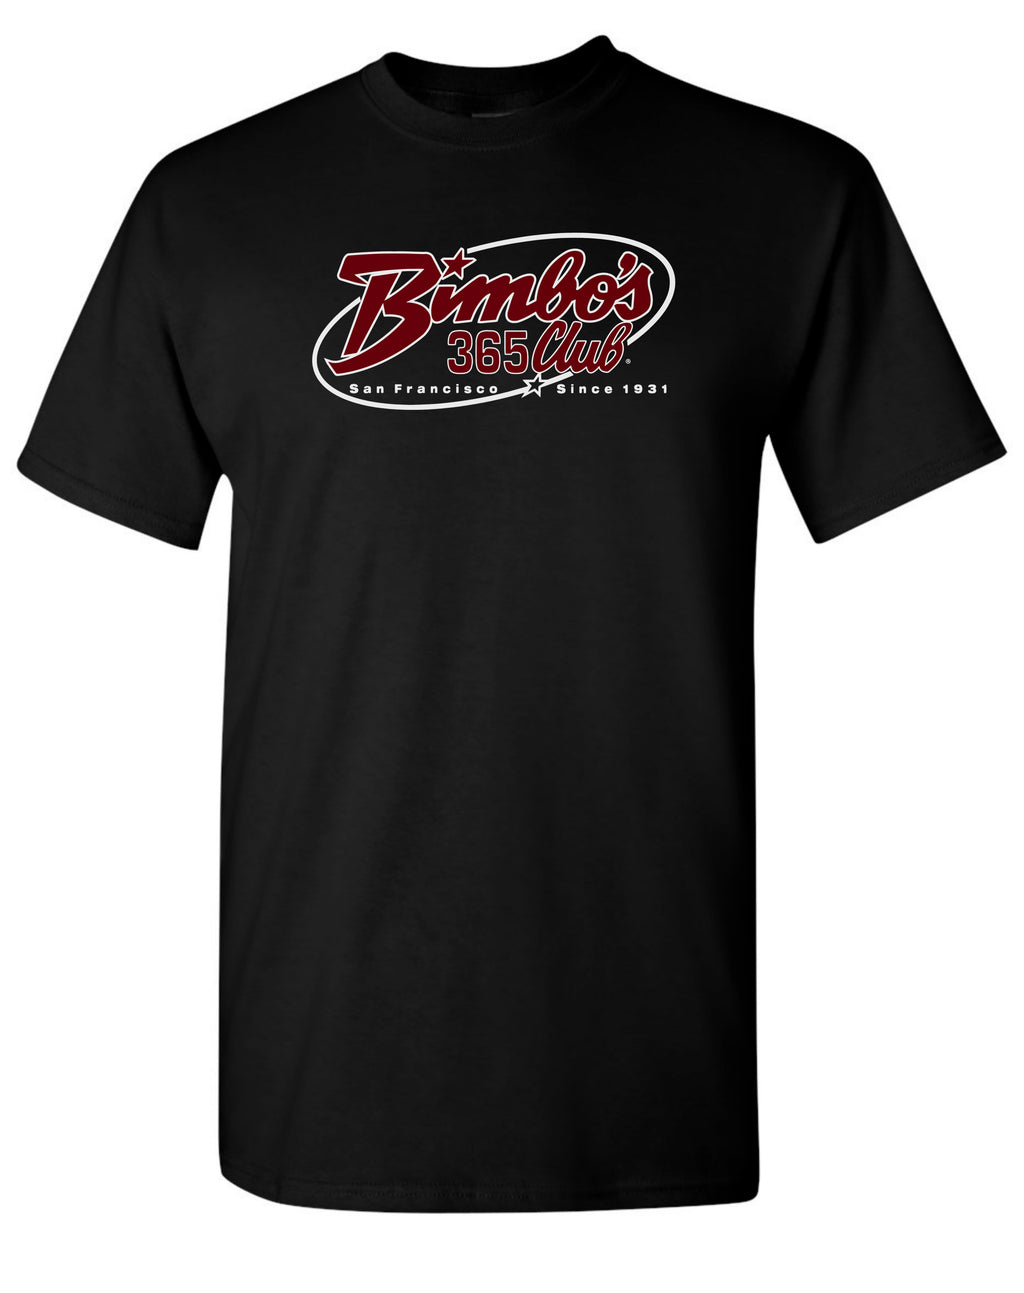 Bimbo's "Logo of the 90's" T-Shirt